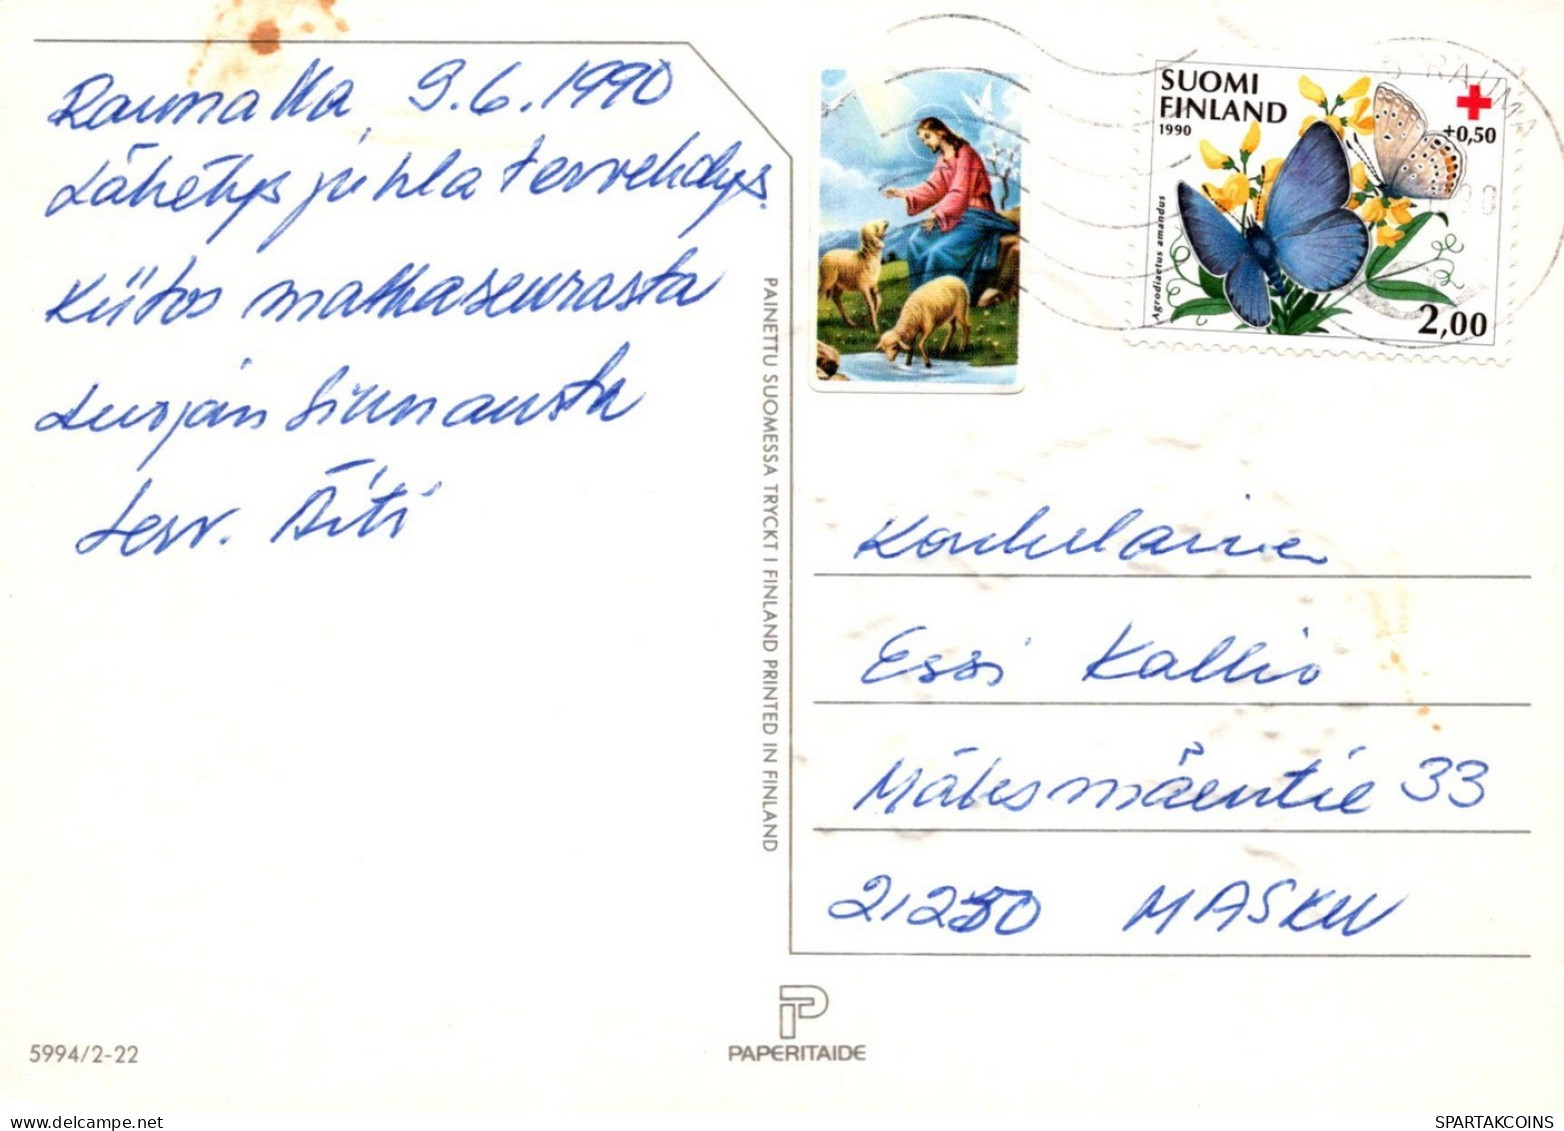 ENGEL WEIHNACHTSFERIEN Feiern & Feste Vintage Ansichtskarte Postkarte CPSM #PAH296.A - Anges